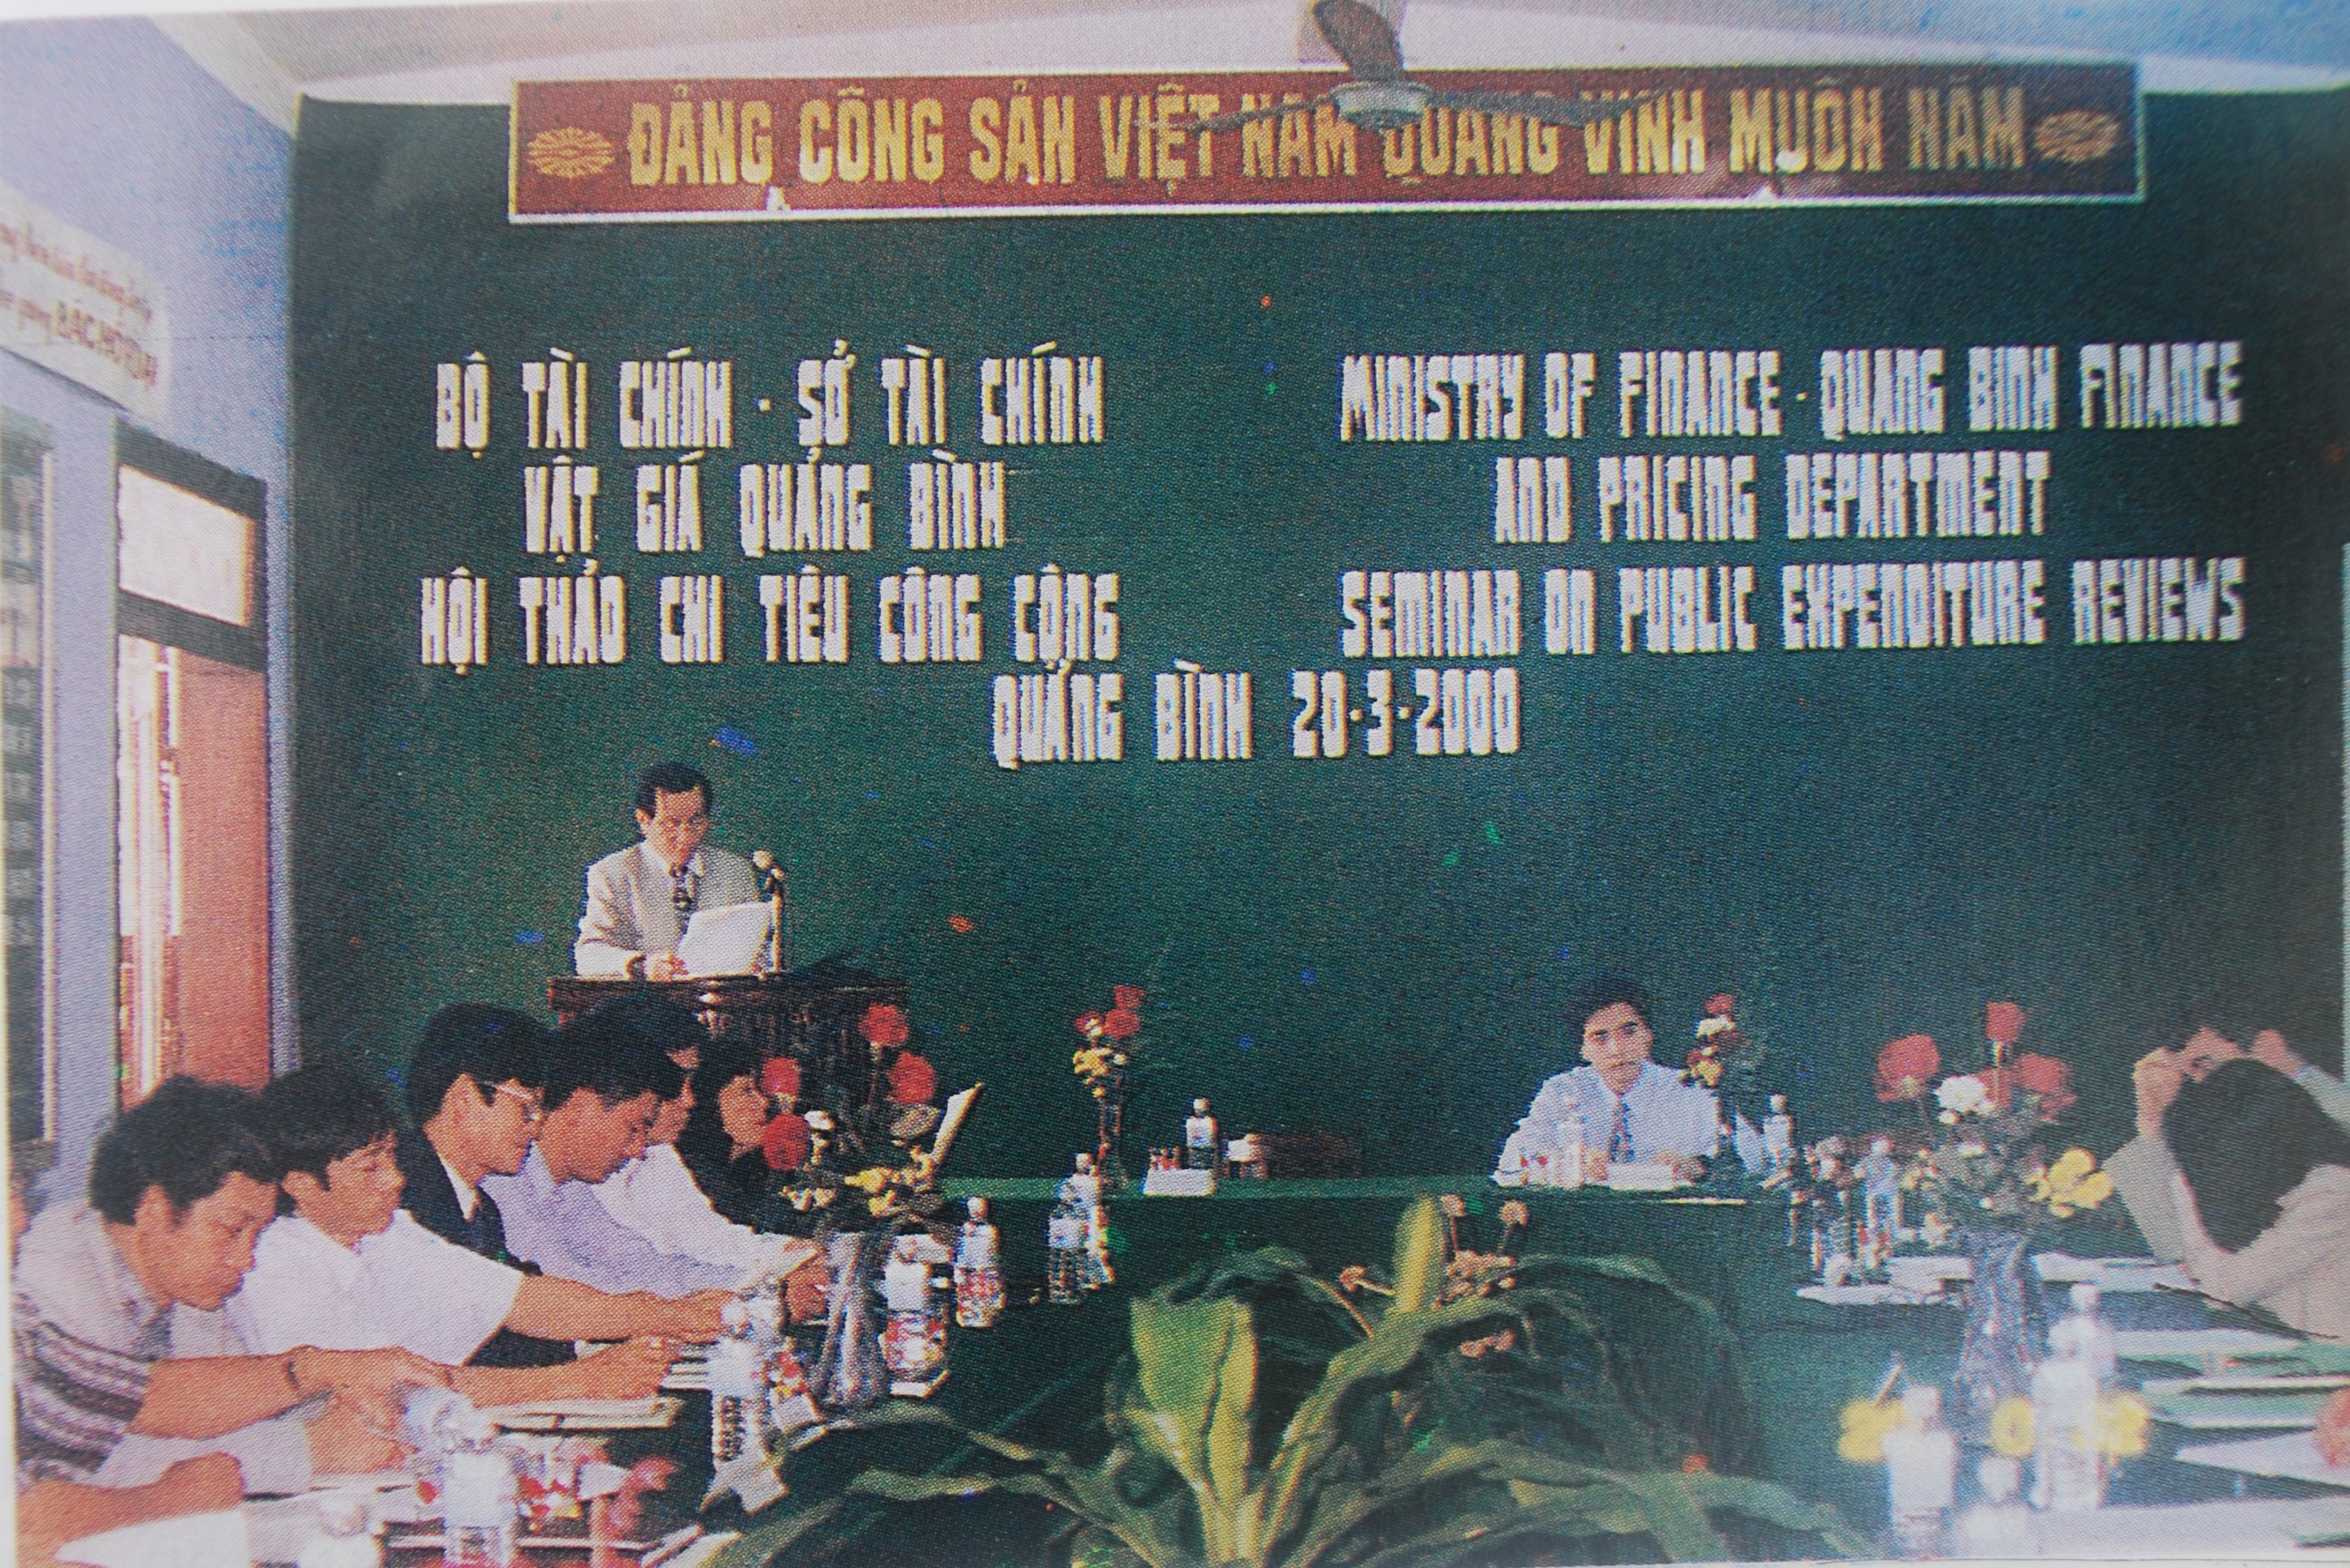 Ngành Tài chính Vật giá Quảng Bình chủ trì hội thảo quốc tế về chi tiêu công cộng (năm 2000).